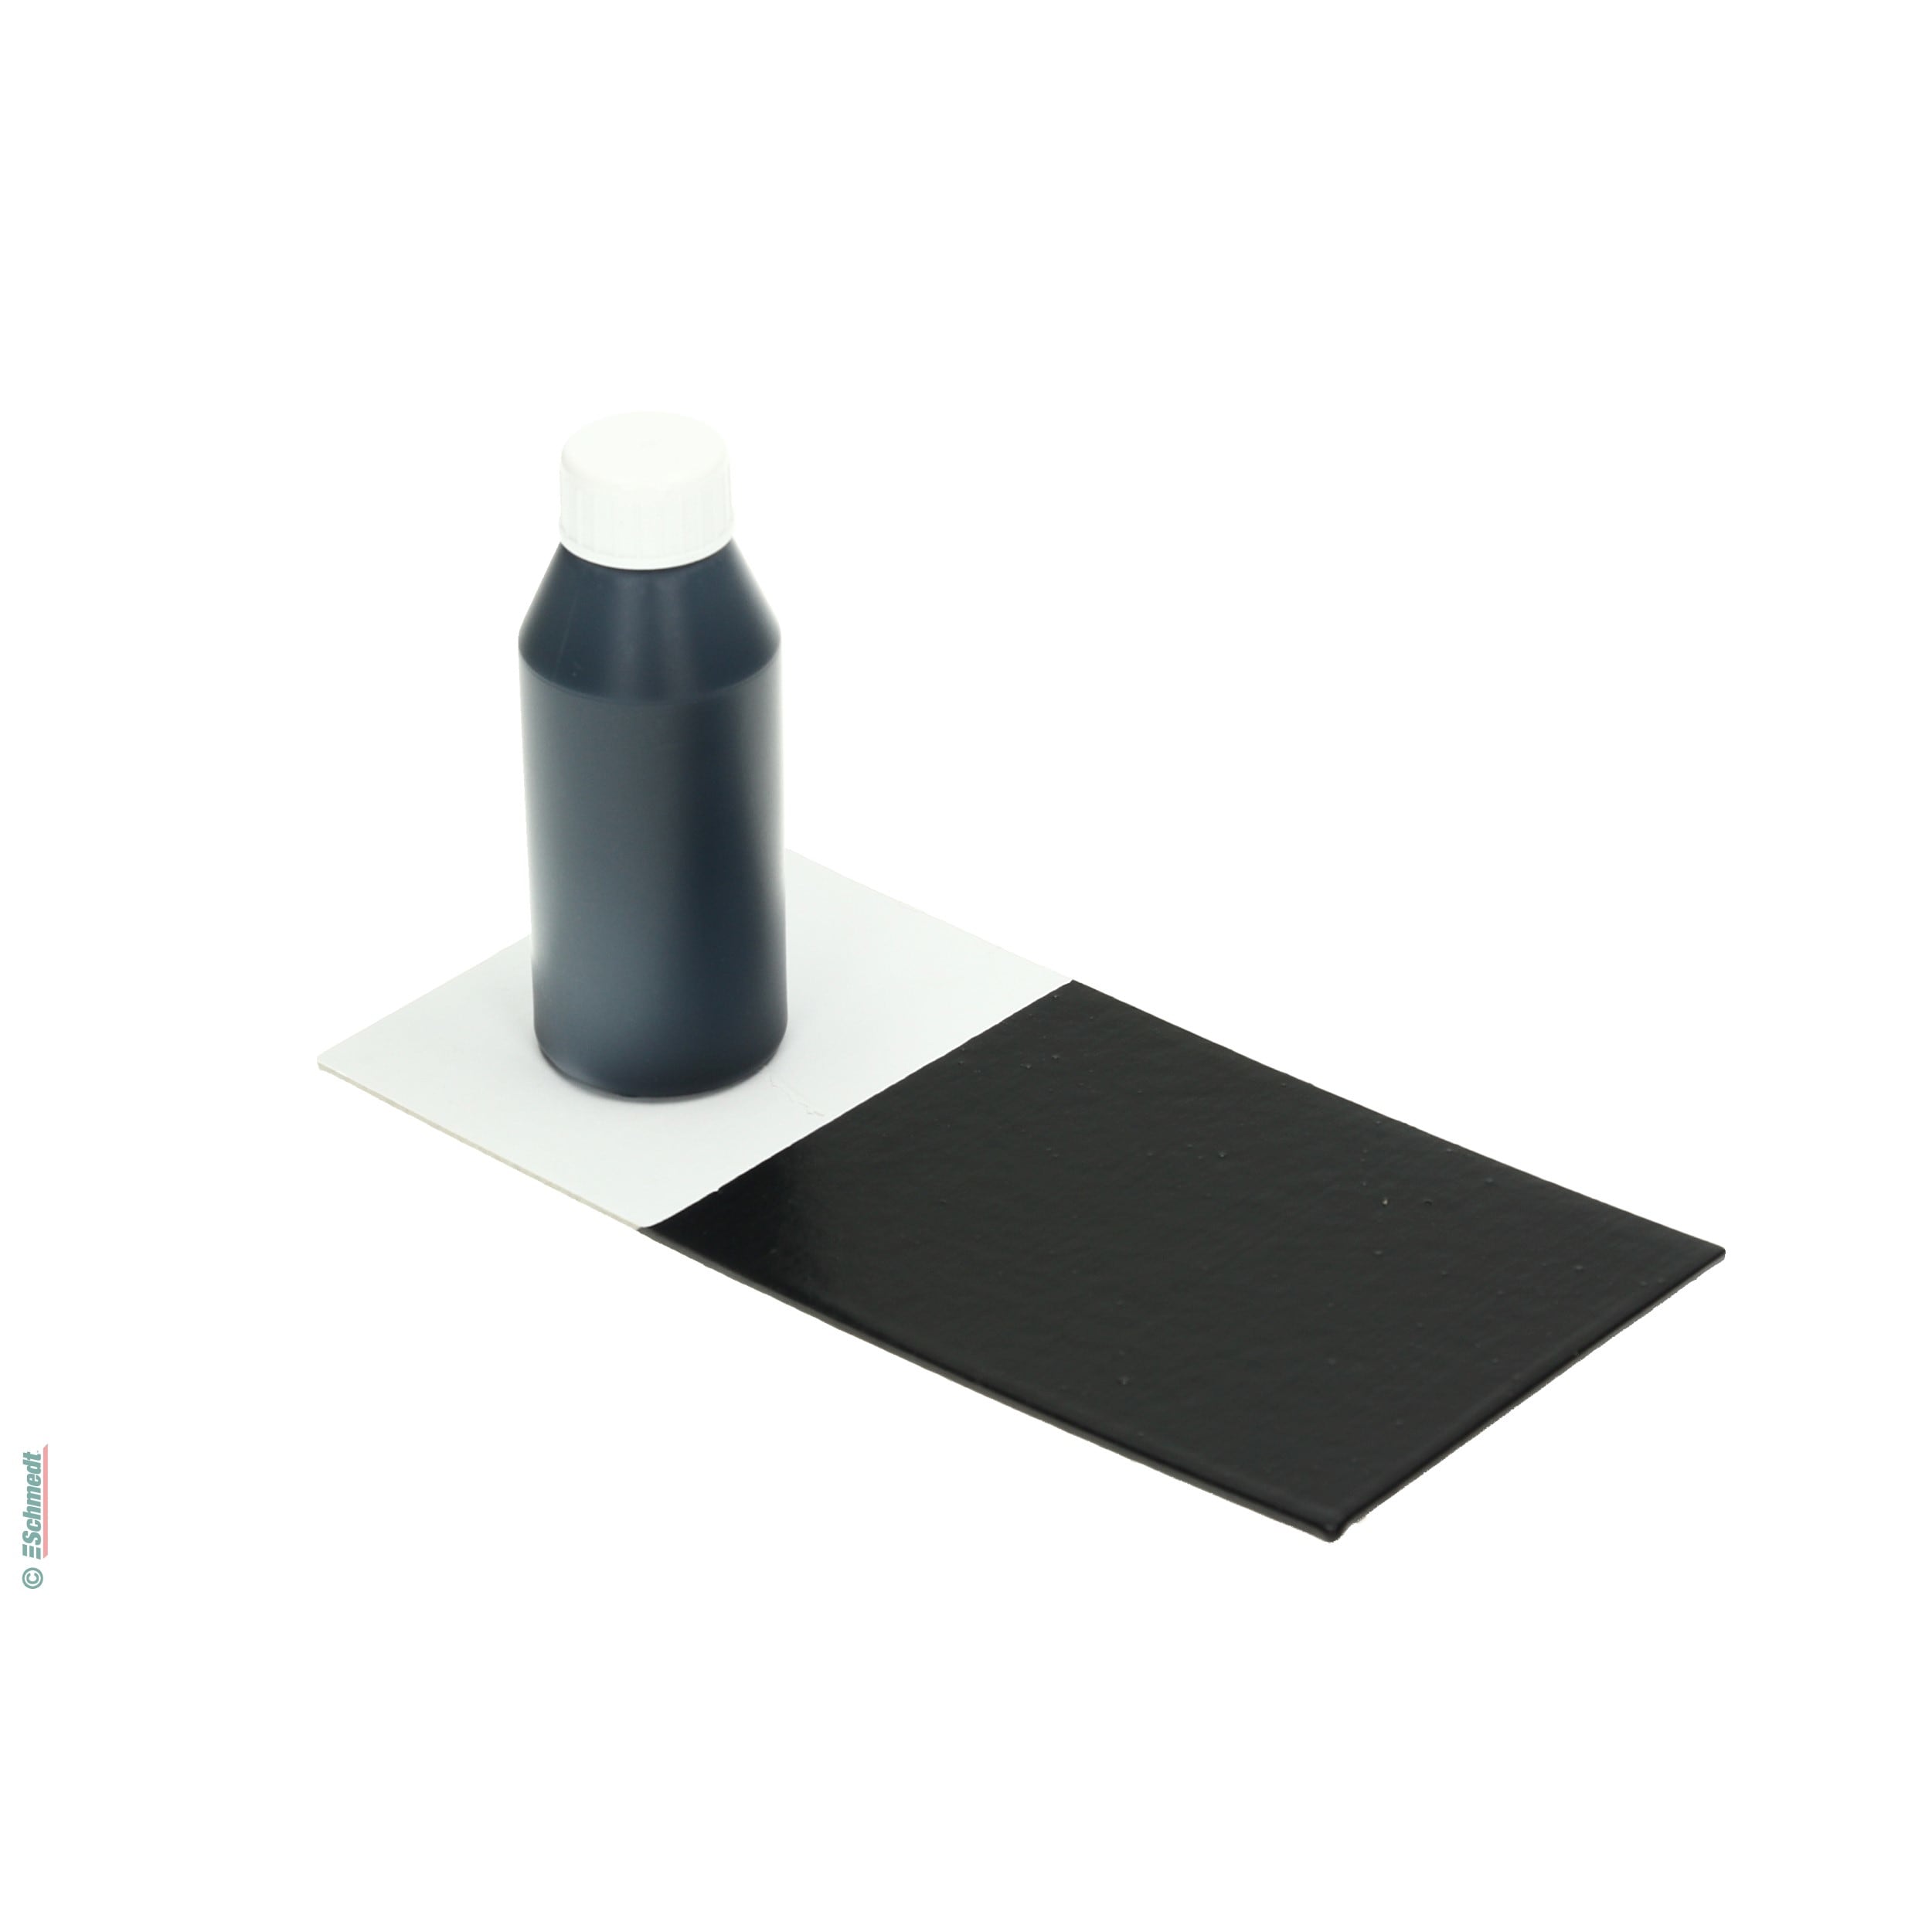 Peinture de colle - Couleur noir - Contenu Bouteille / 990 ml - pour teindre colles à dispersion comme p. ex. pour bloc-notes ou livres à do... - image-1